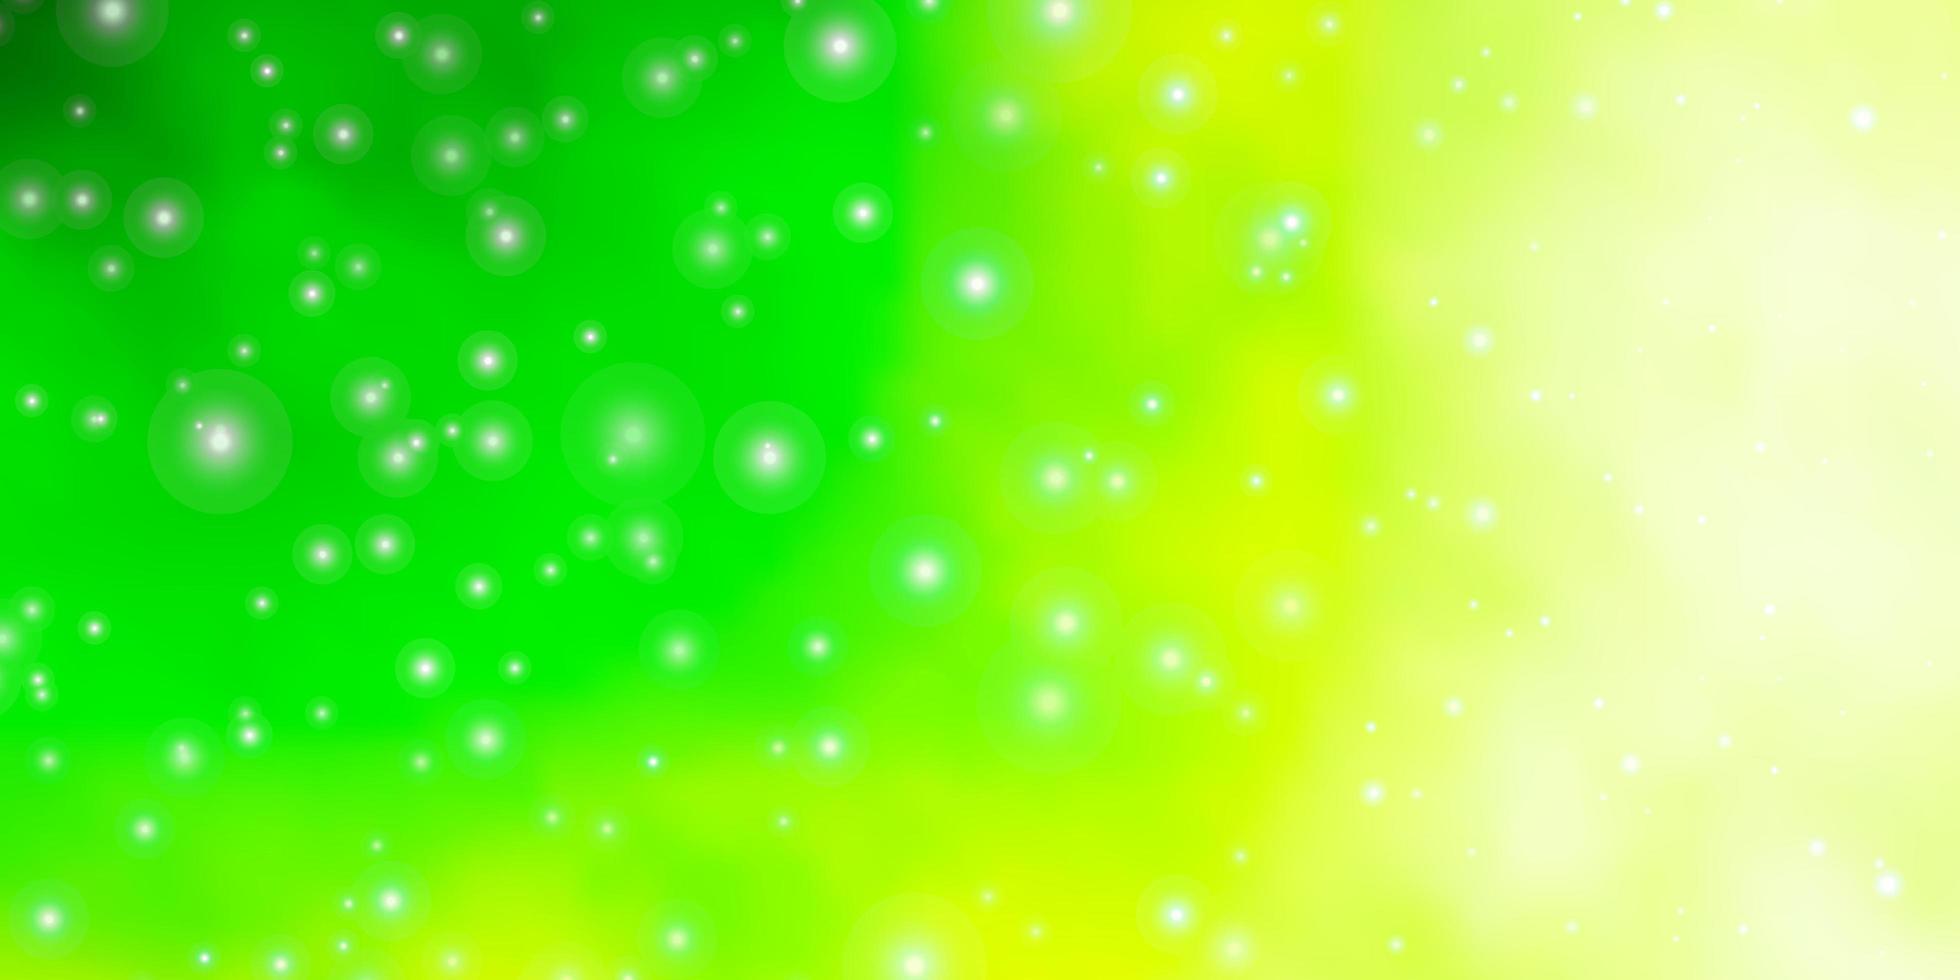 diseño de vector verde claro con estrellas brillantes. colorida ilustración en estilo abstracto con estrellas de degradado. tema para teléfonos celulares.